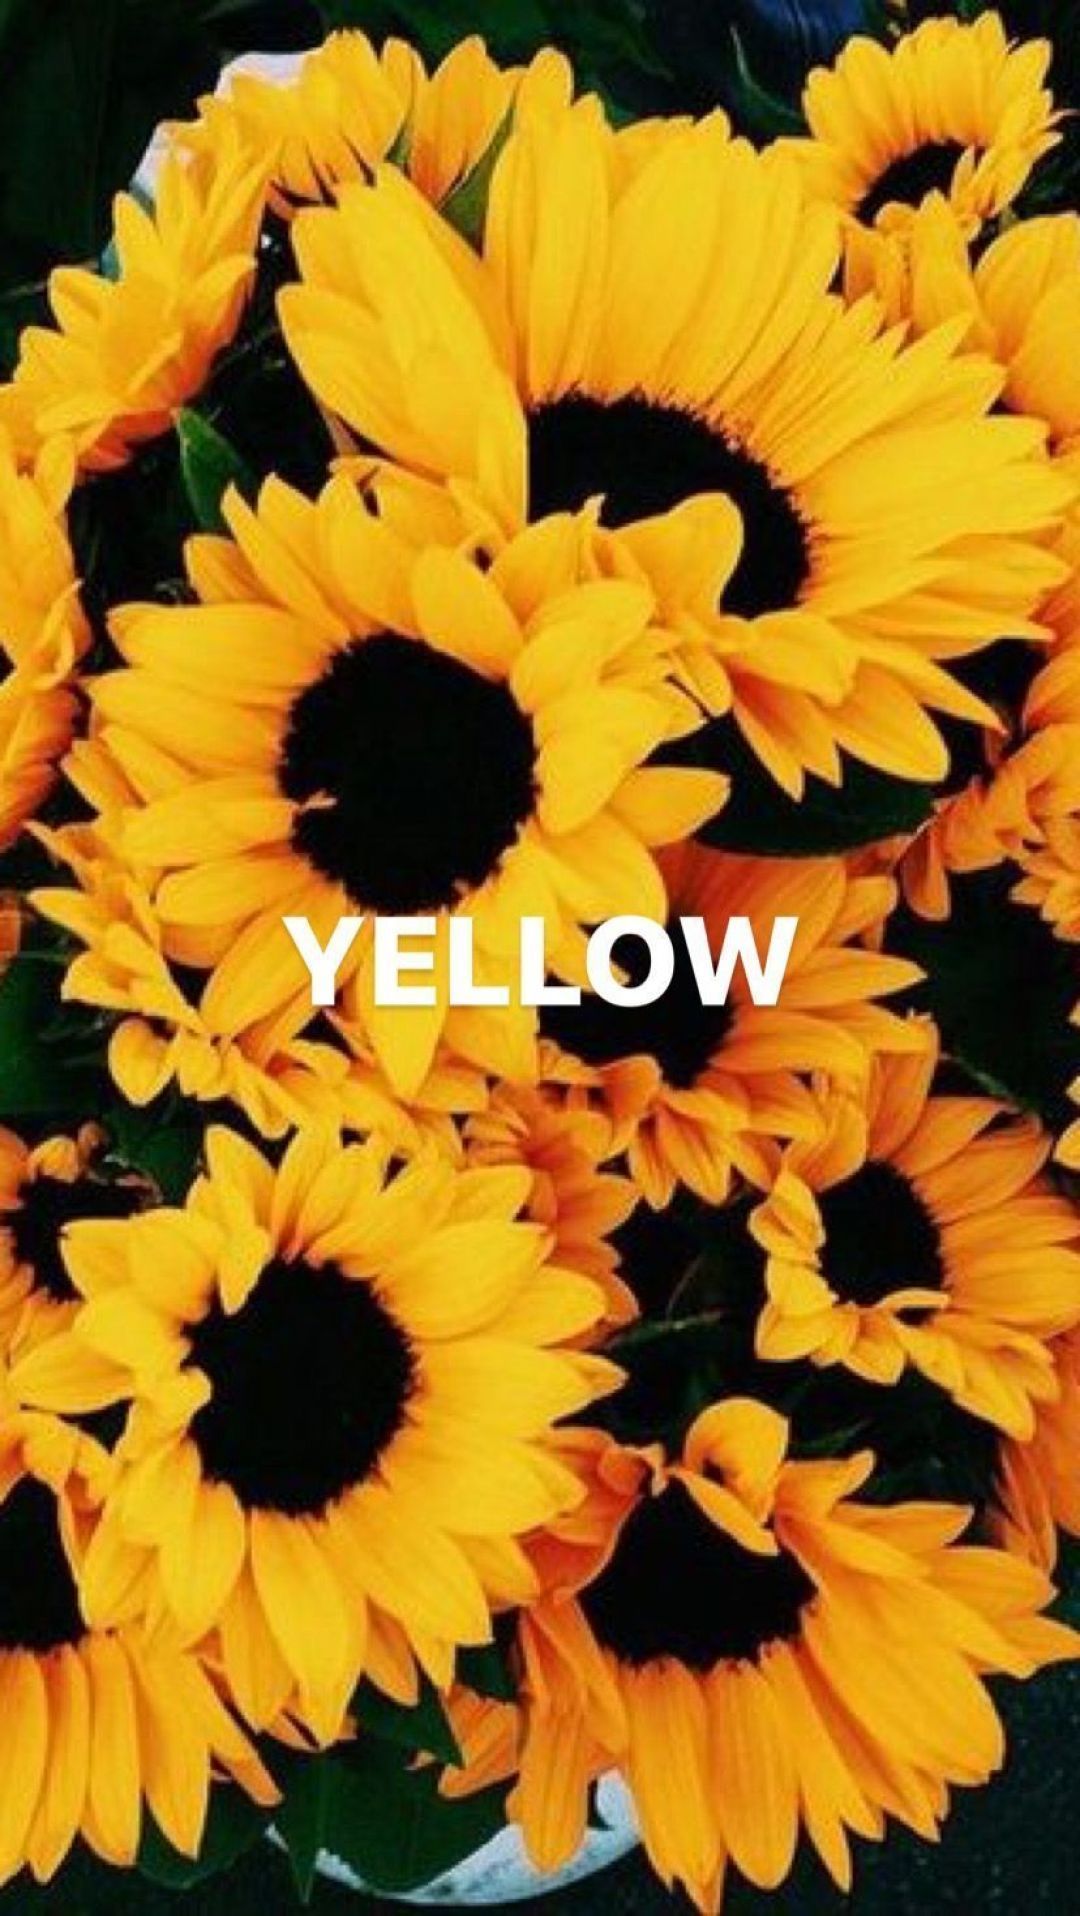 Yellow Sunflower Aesthetic Wallpaper Free Yellow Sunflower